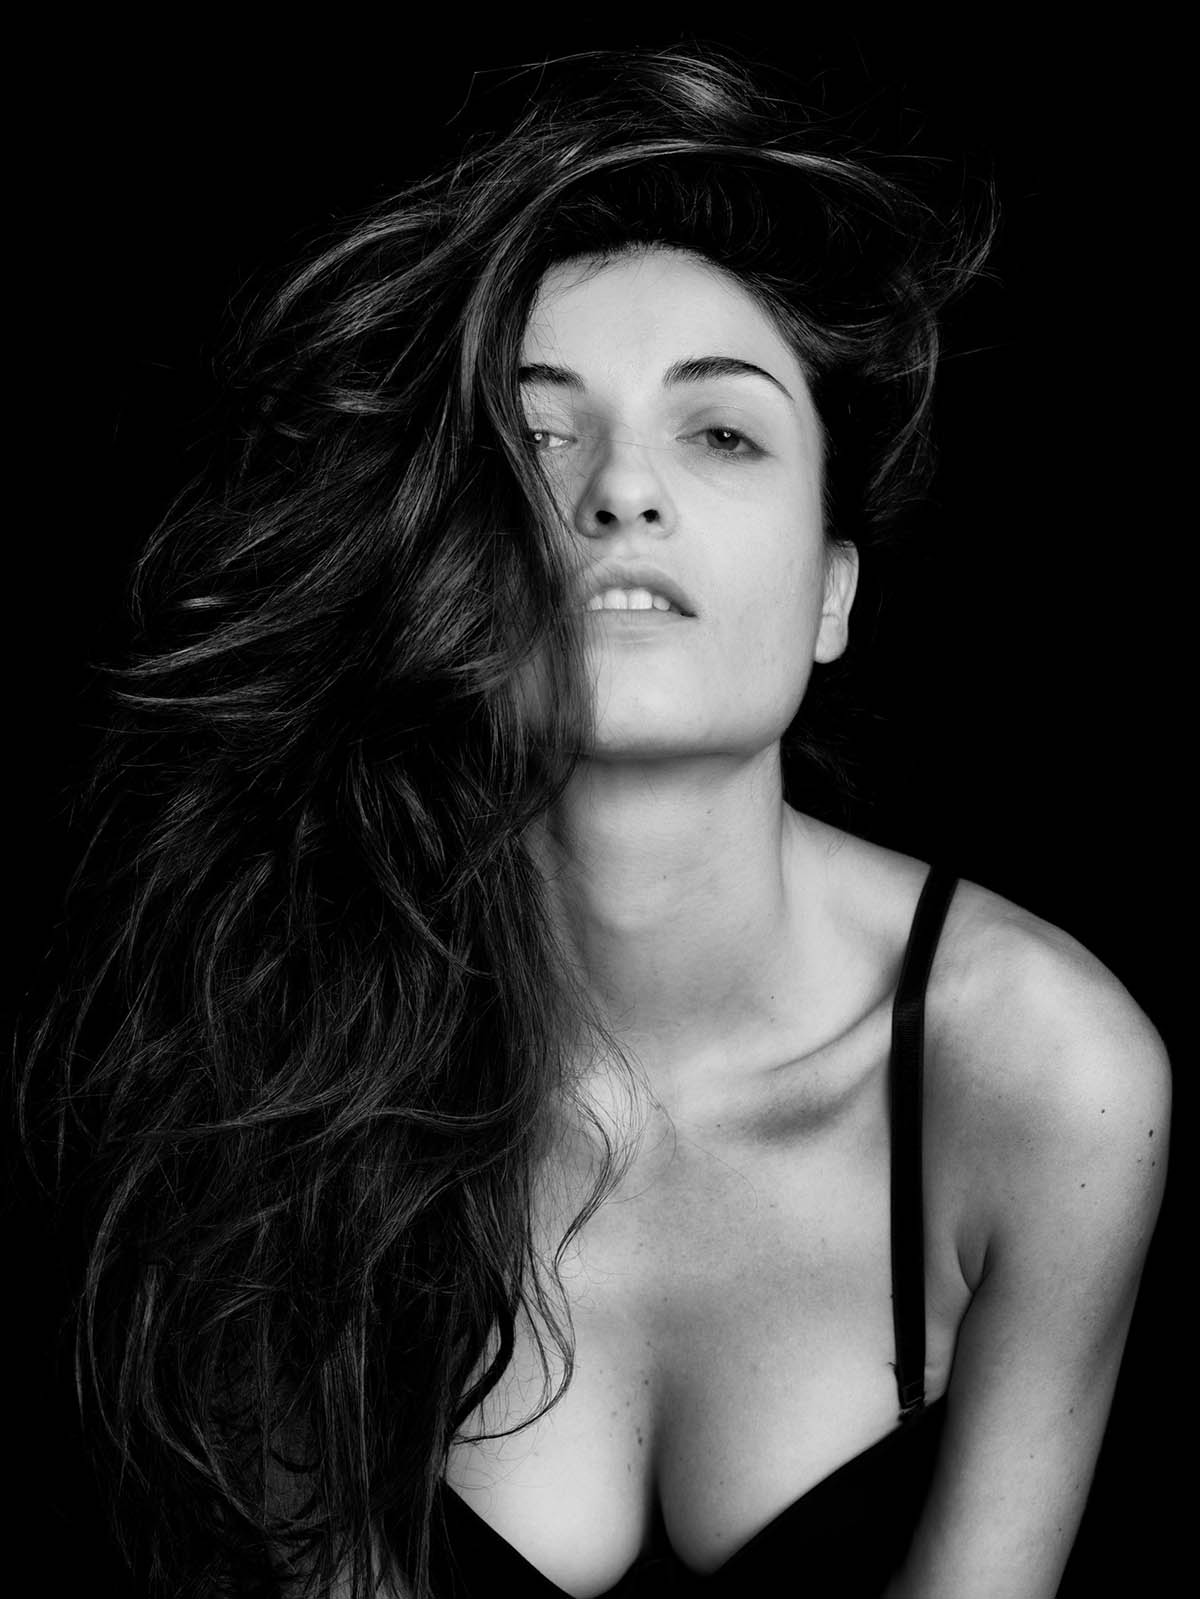 Σέξυ φωτογραφίες της top model Ελισάβετ Κατσαμάκη